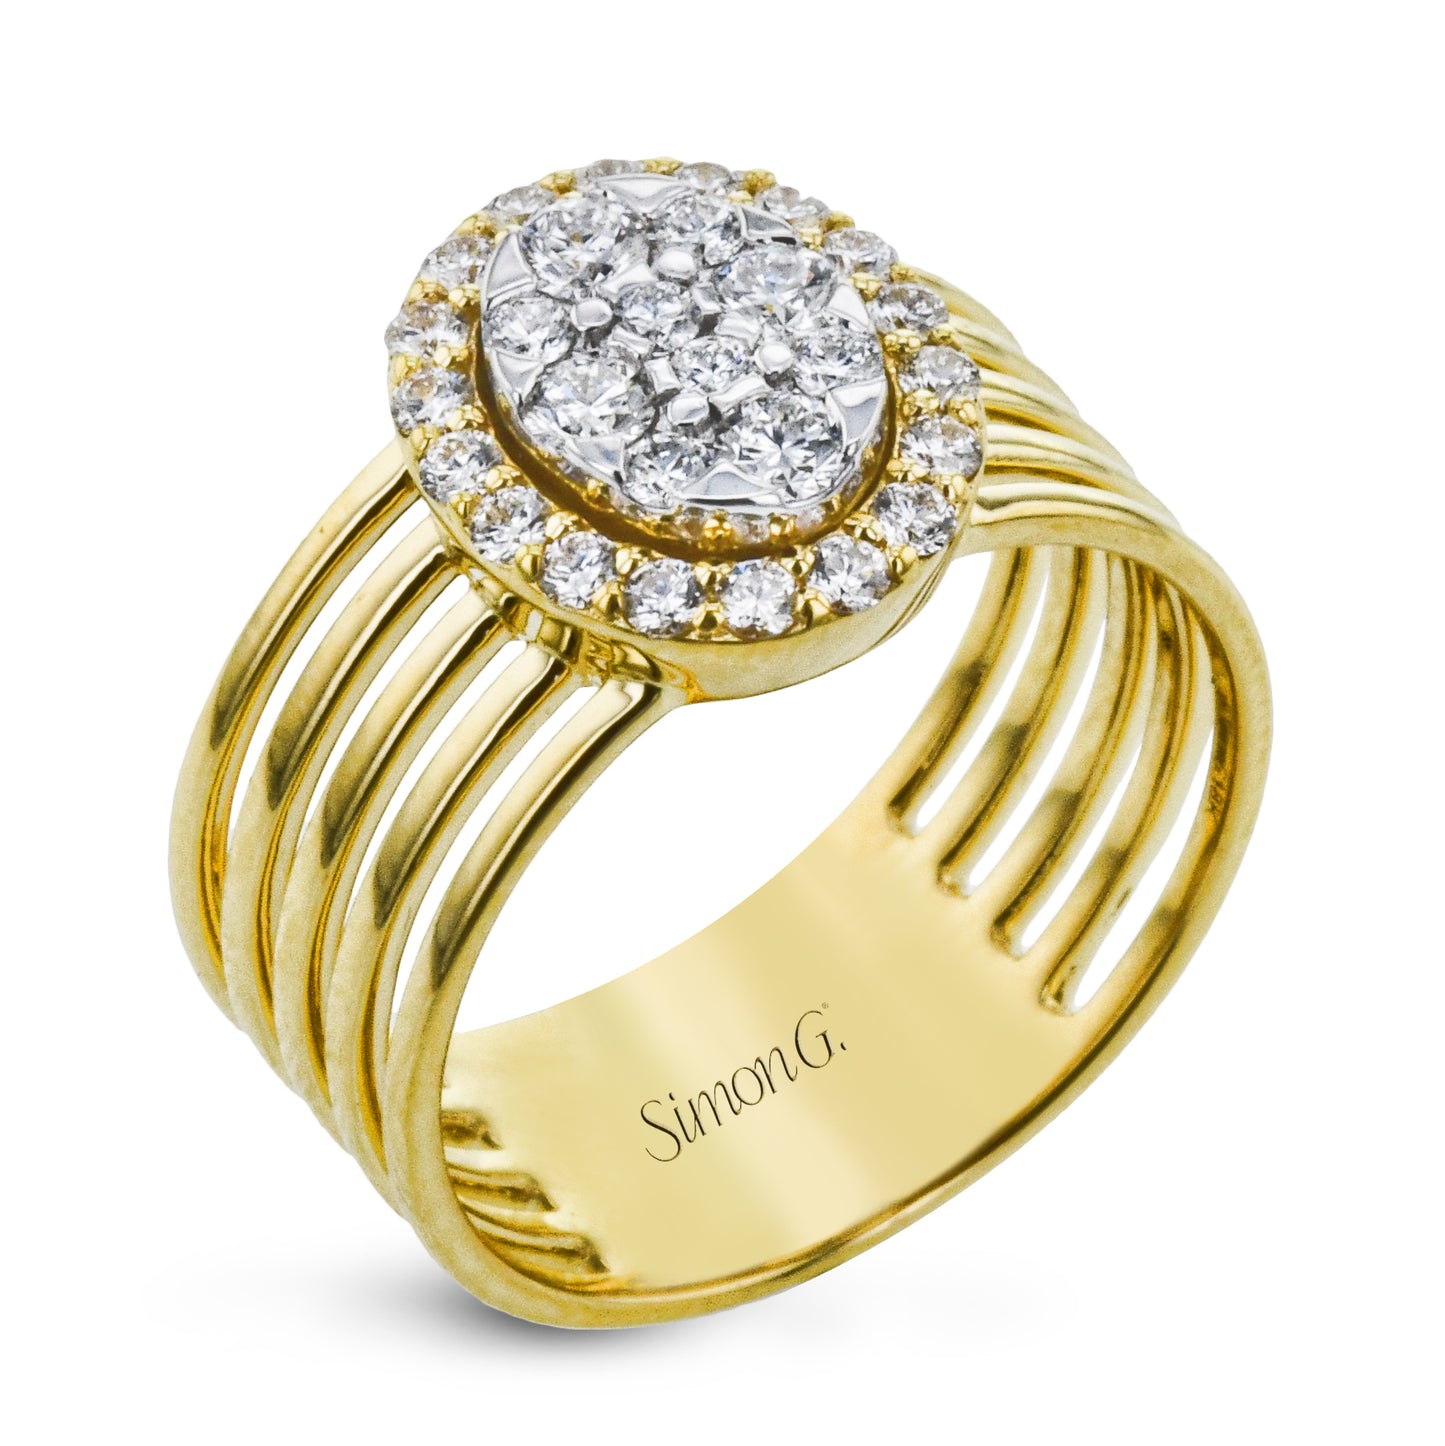 Right Ring in 18k Gold & diamonds